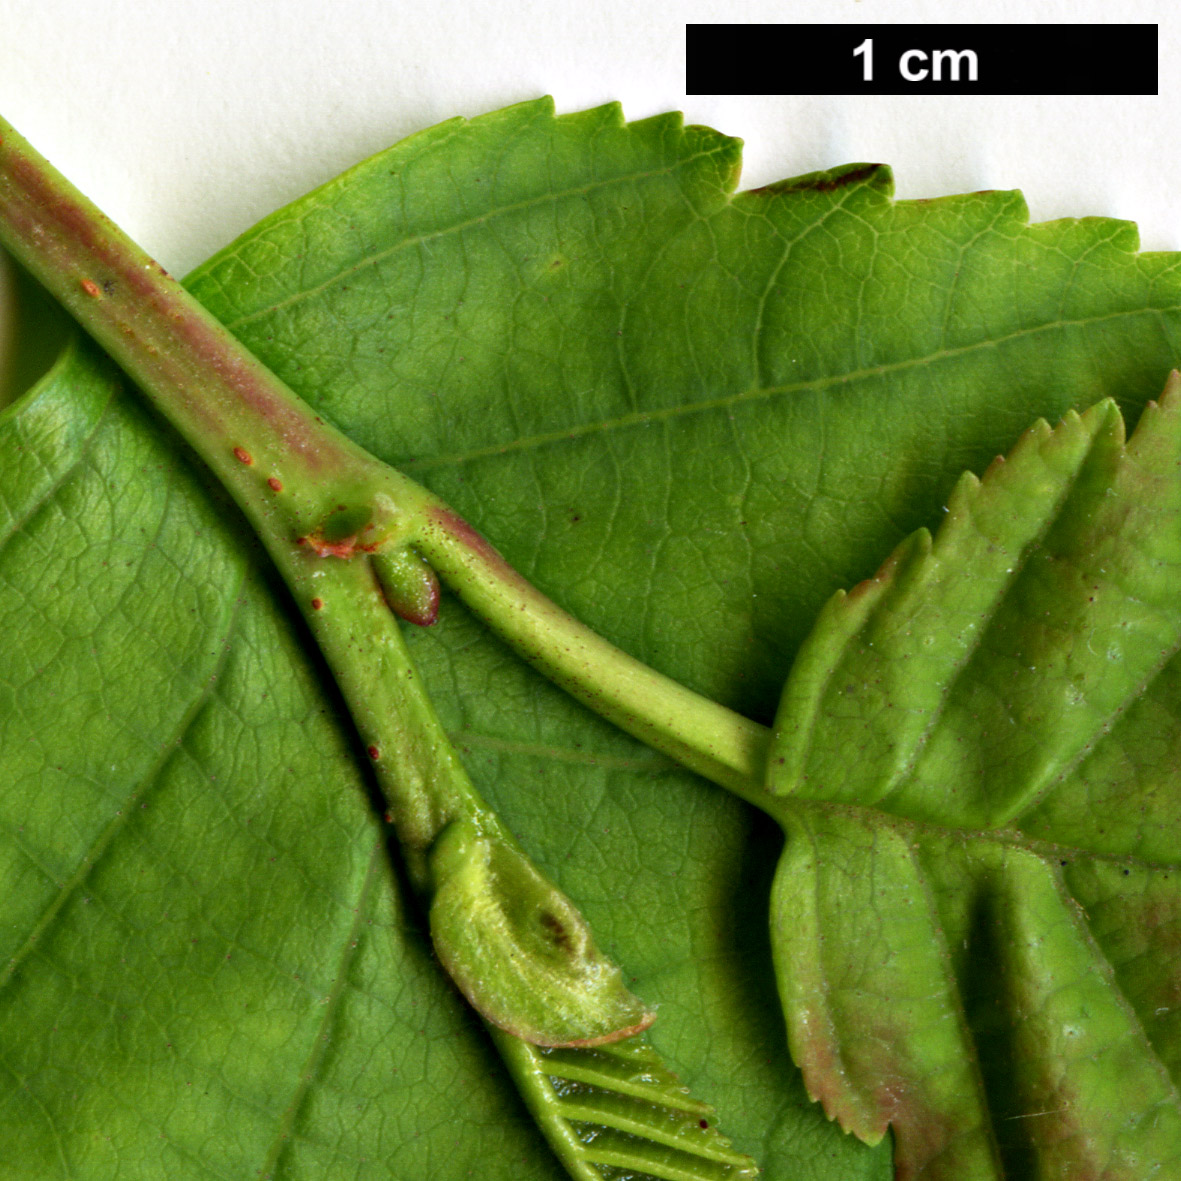 High resolution image: Family: Betulaceae - Genus: Alnus - Taxon: incana - SpeciesSub: subsp. tenuifolia